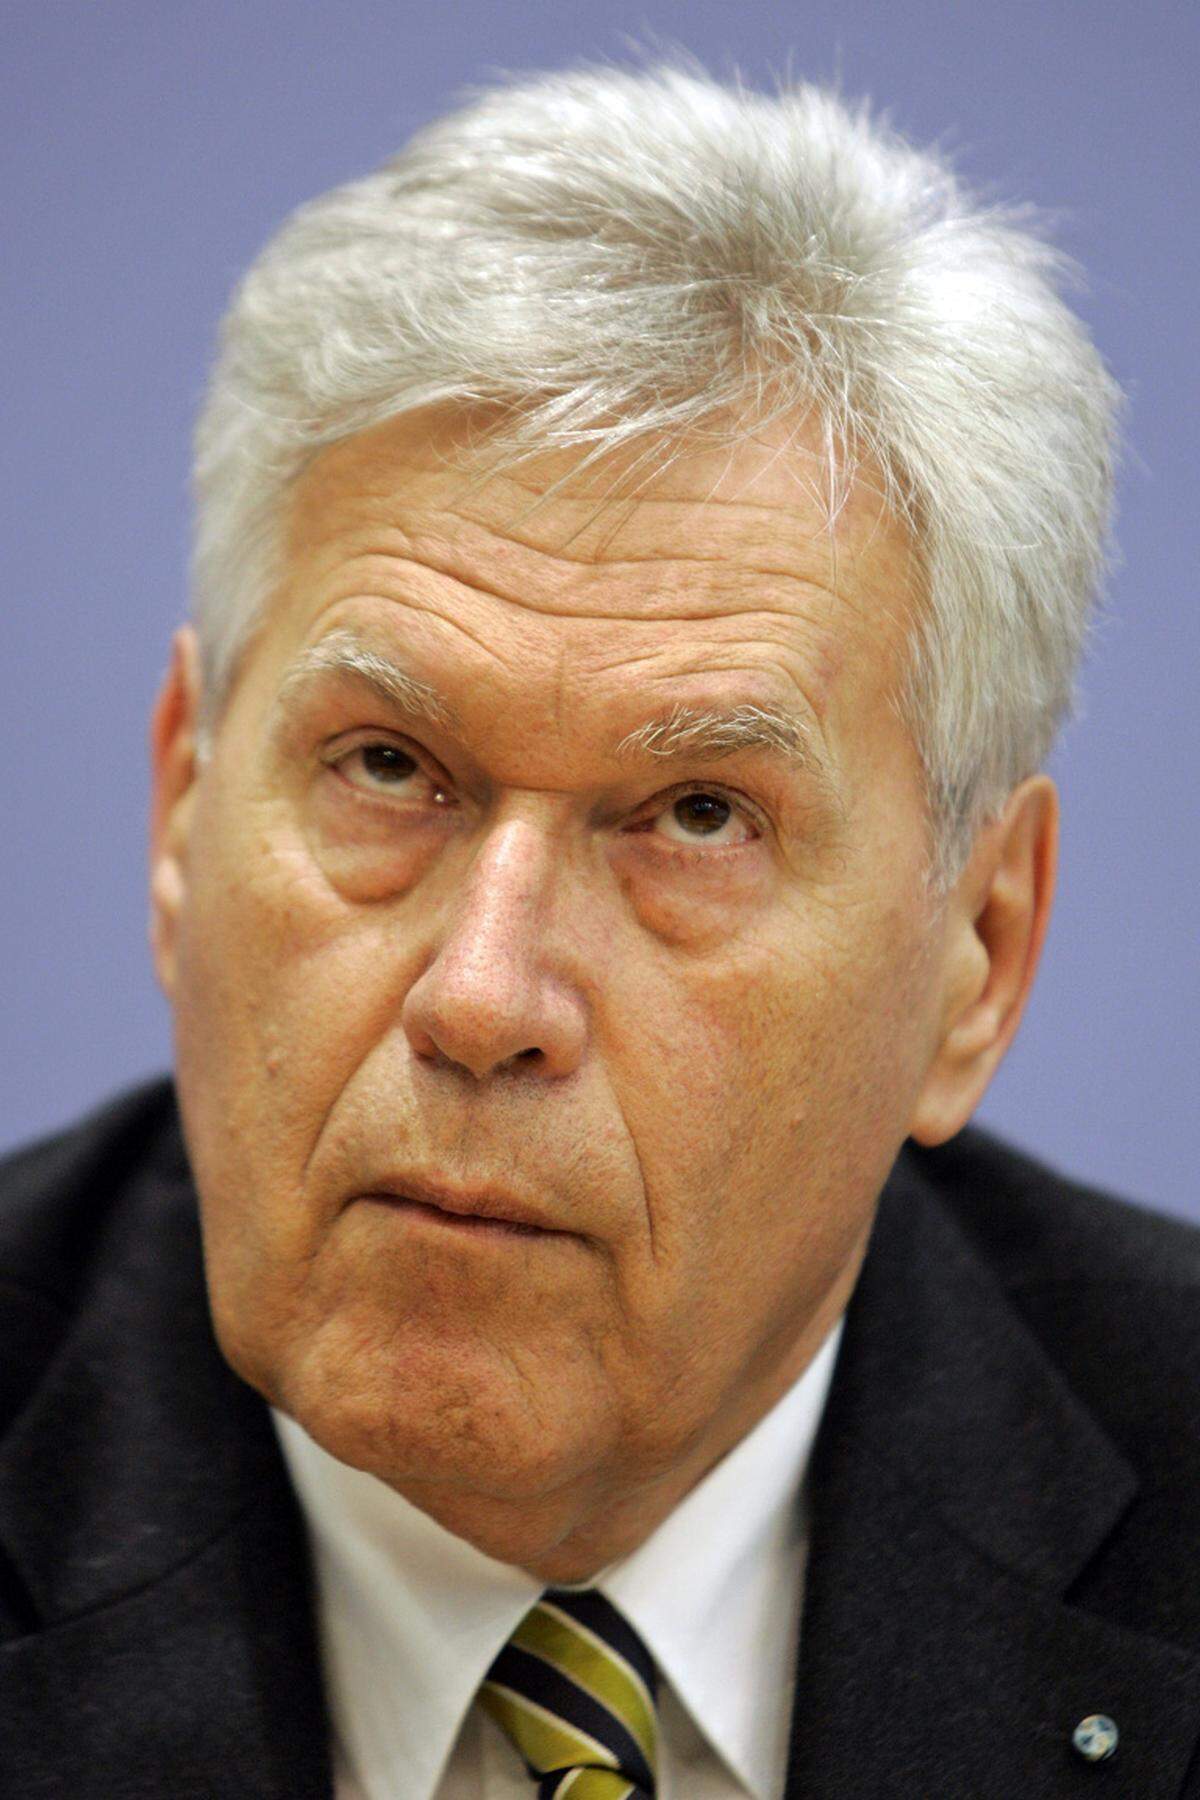 Auch der ehemalige CSU-Landesgruppenchef Michael Glos leistete sich verbale Attacken. Er nannte im Jahr 2004 den damaligen Außenminister Joschka Fischer einen "Zuhälter".